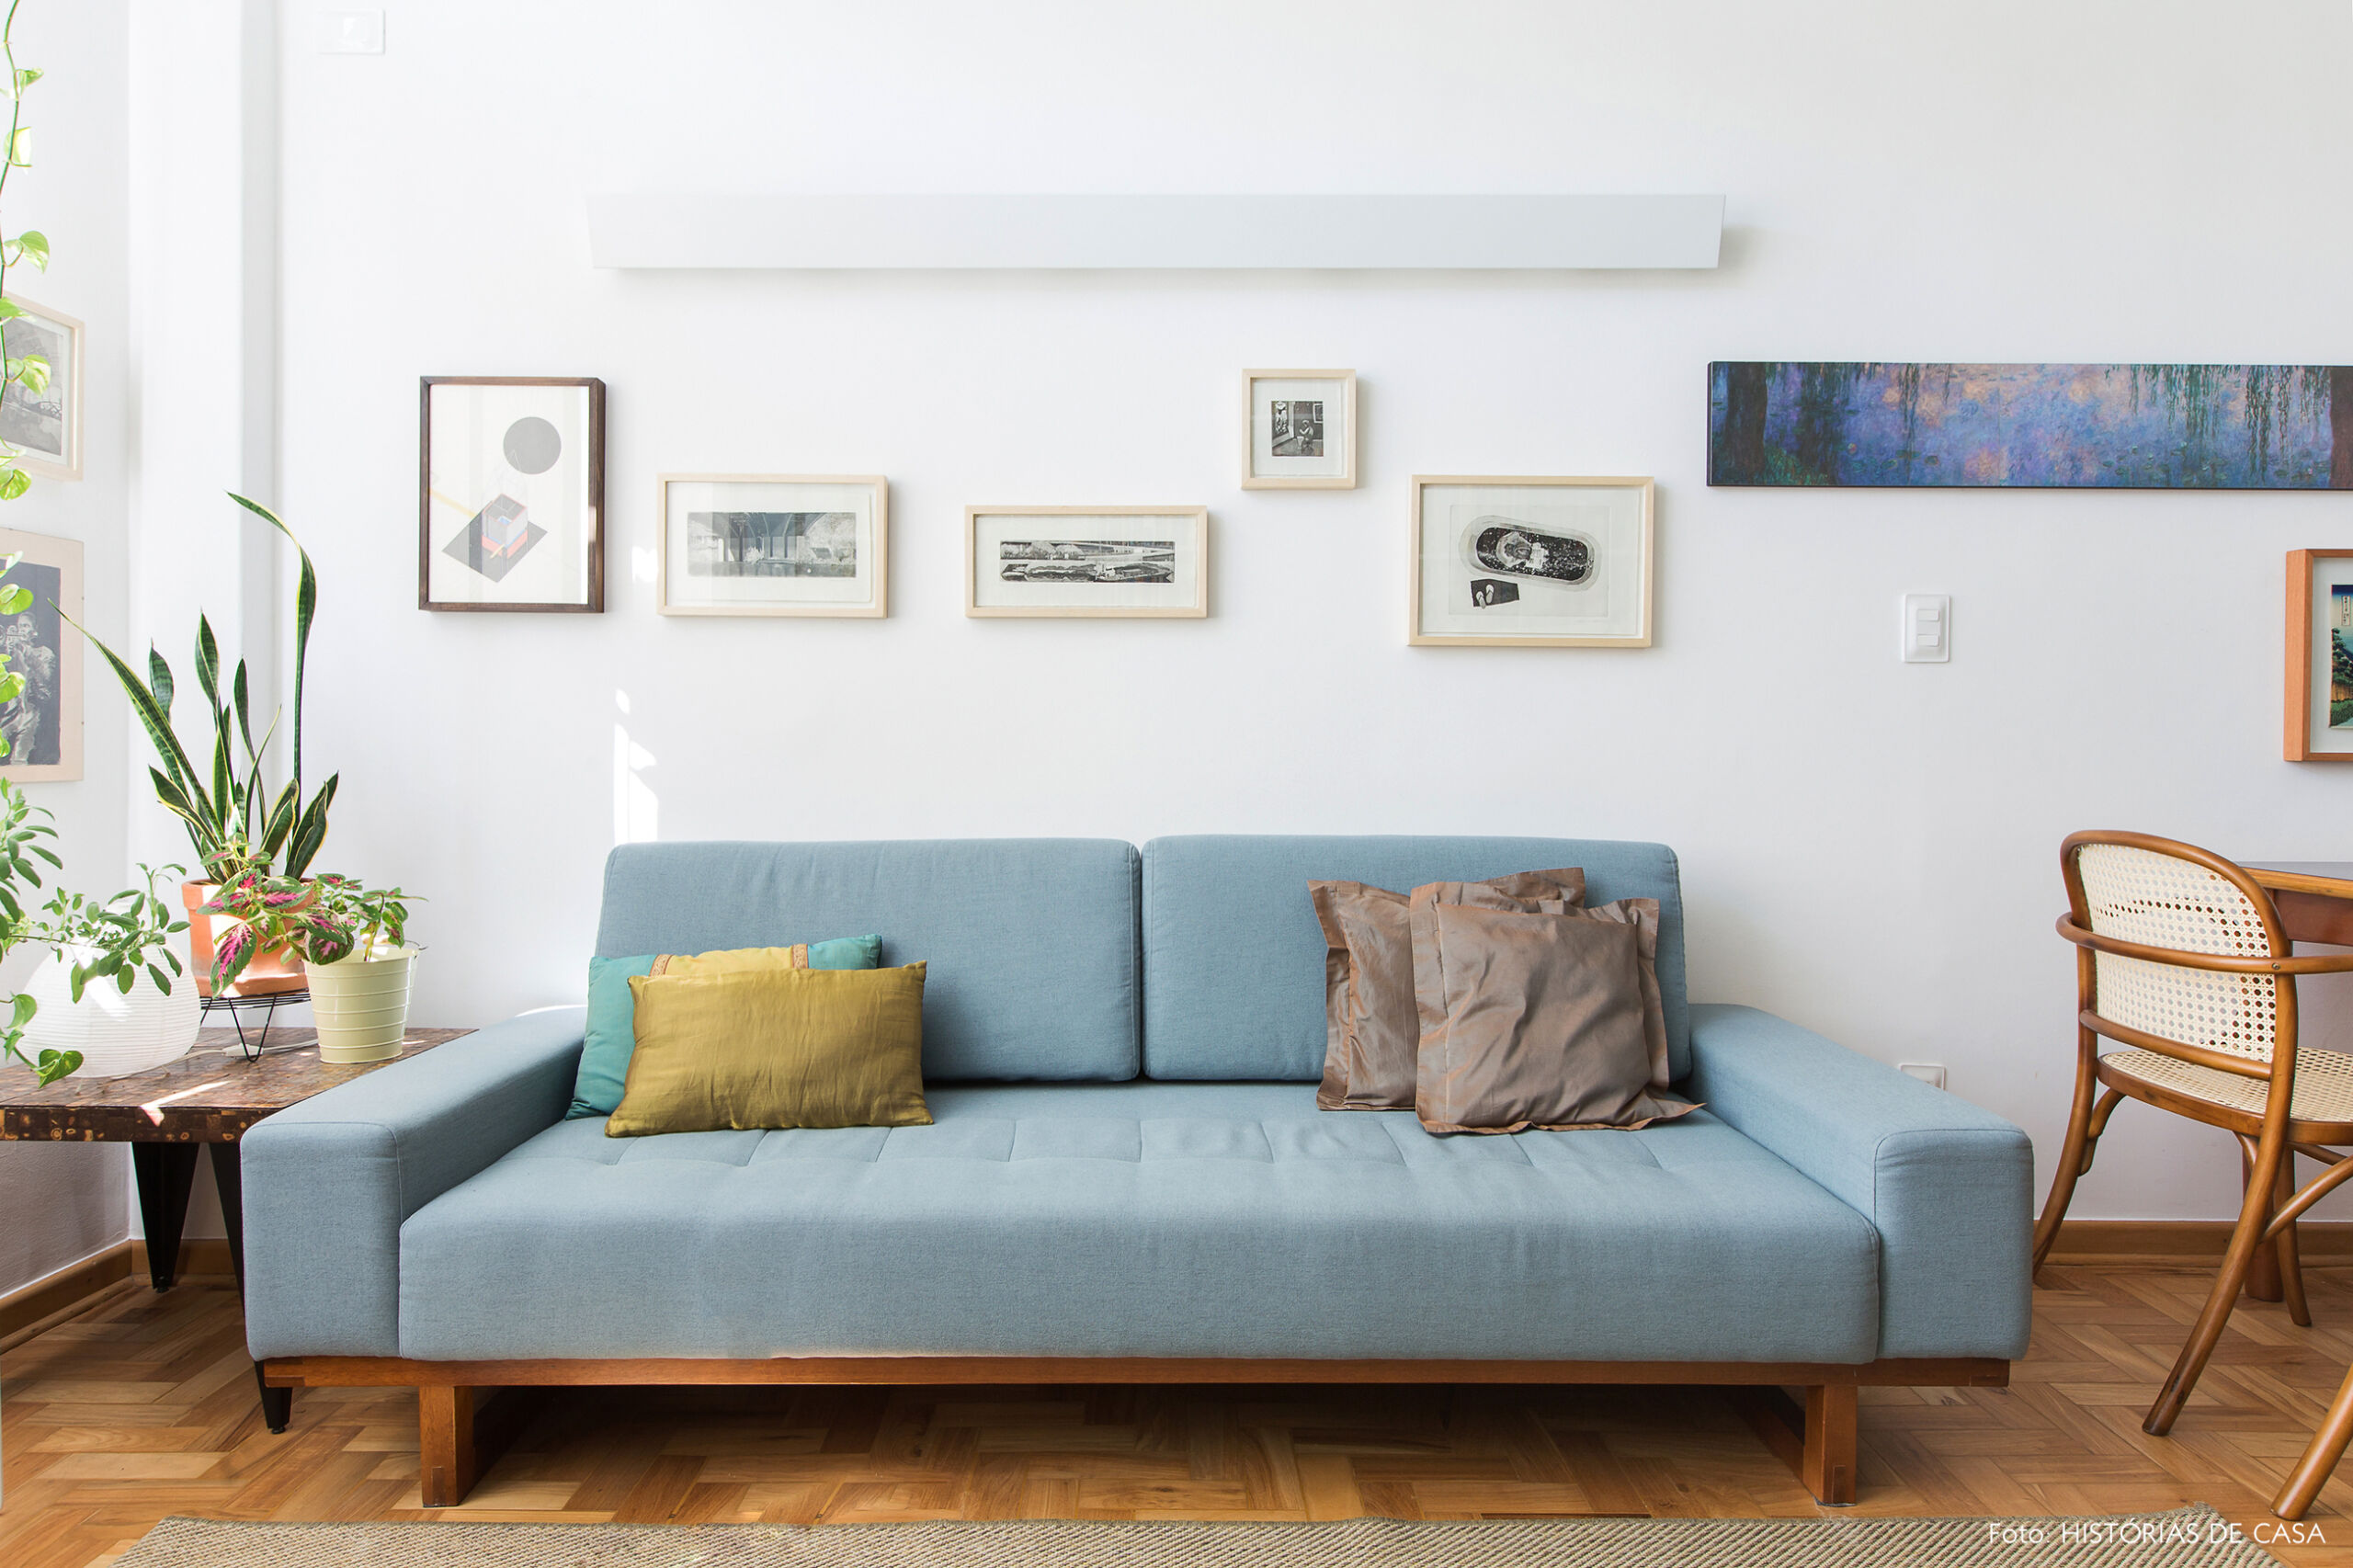 Sala pequena com sofá colorido, azul e parede de quadros